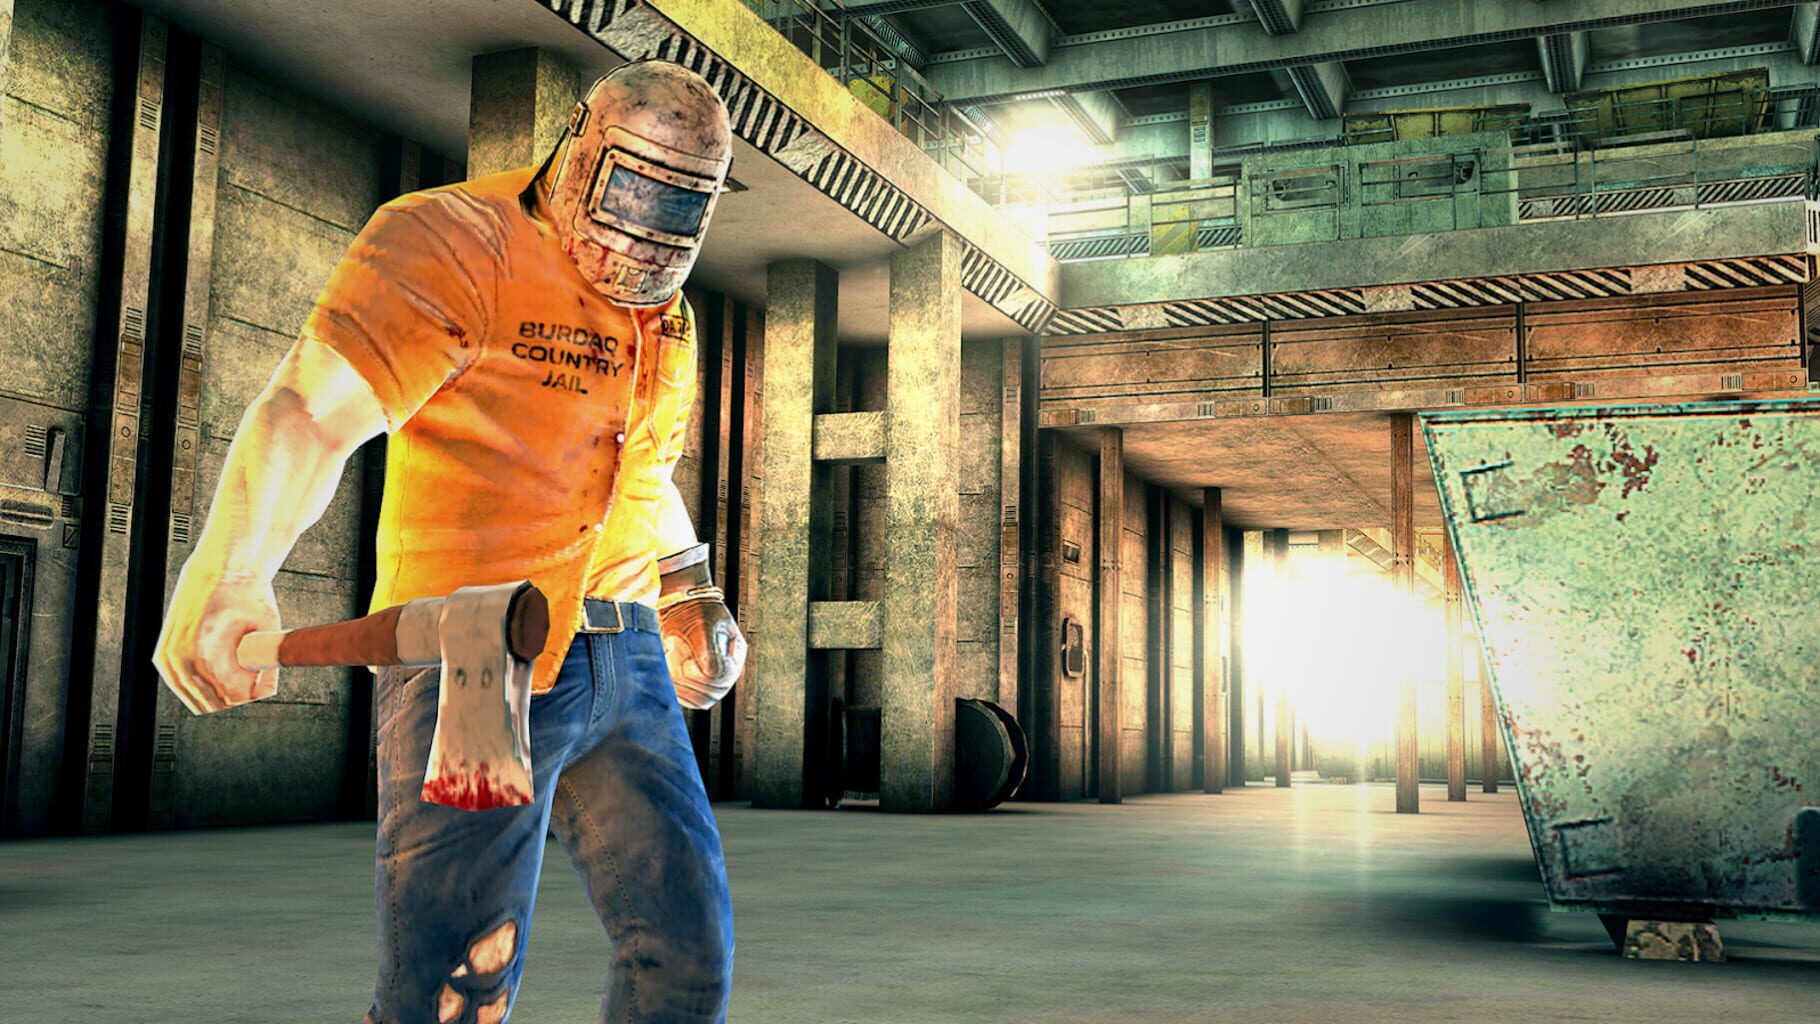 Slaughter 2: Prison Assault screenshots